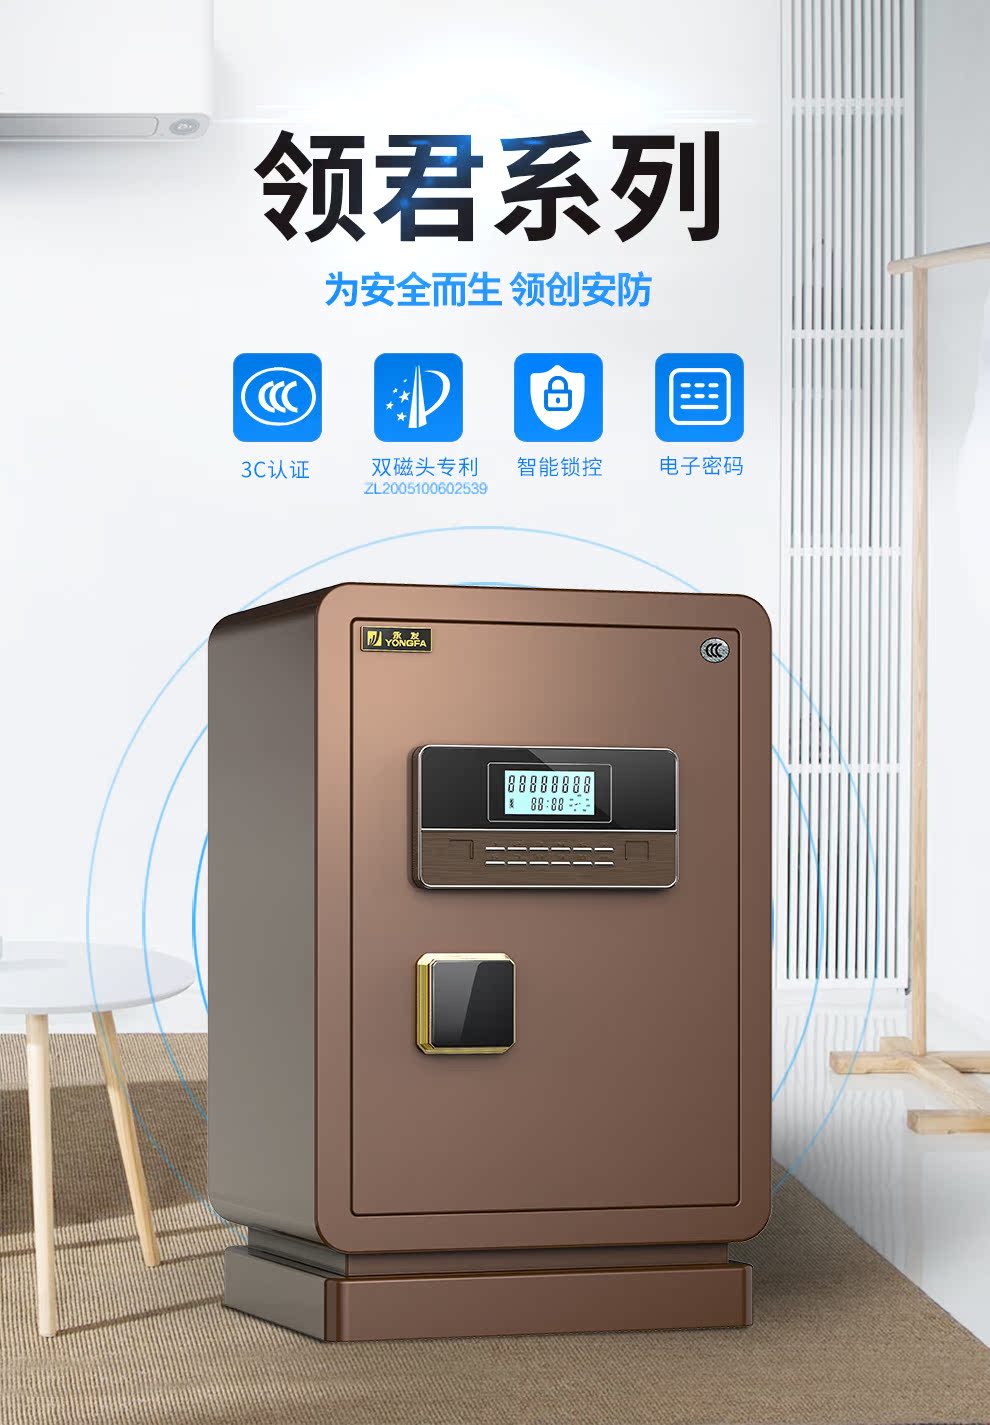 YONGFA Yongfa hộ gia đình an toàn nhỏ 30cm-80cm mật khẩu điện tử chống trộm chìa khóa an toàn quốc gia 3C chứng nhận tất cả tường thép văn phòng nhỏ vào tủ quần áo chính thức